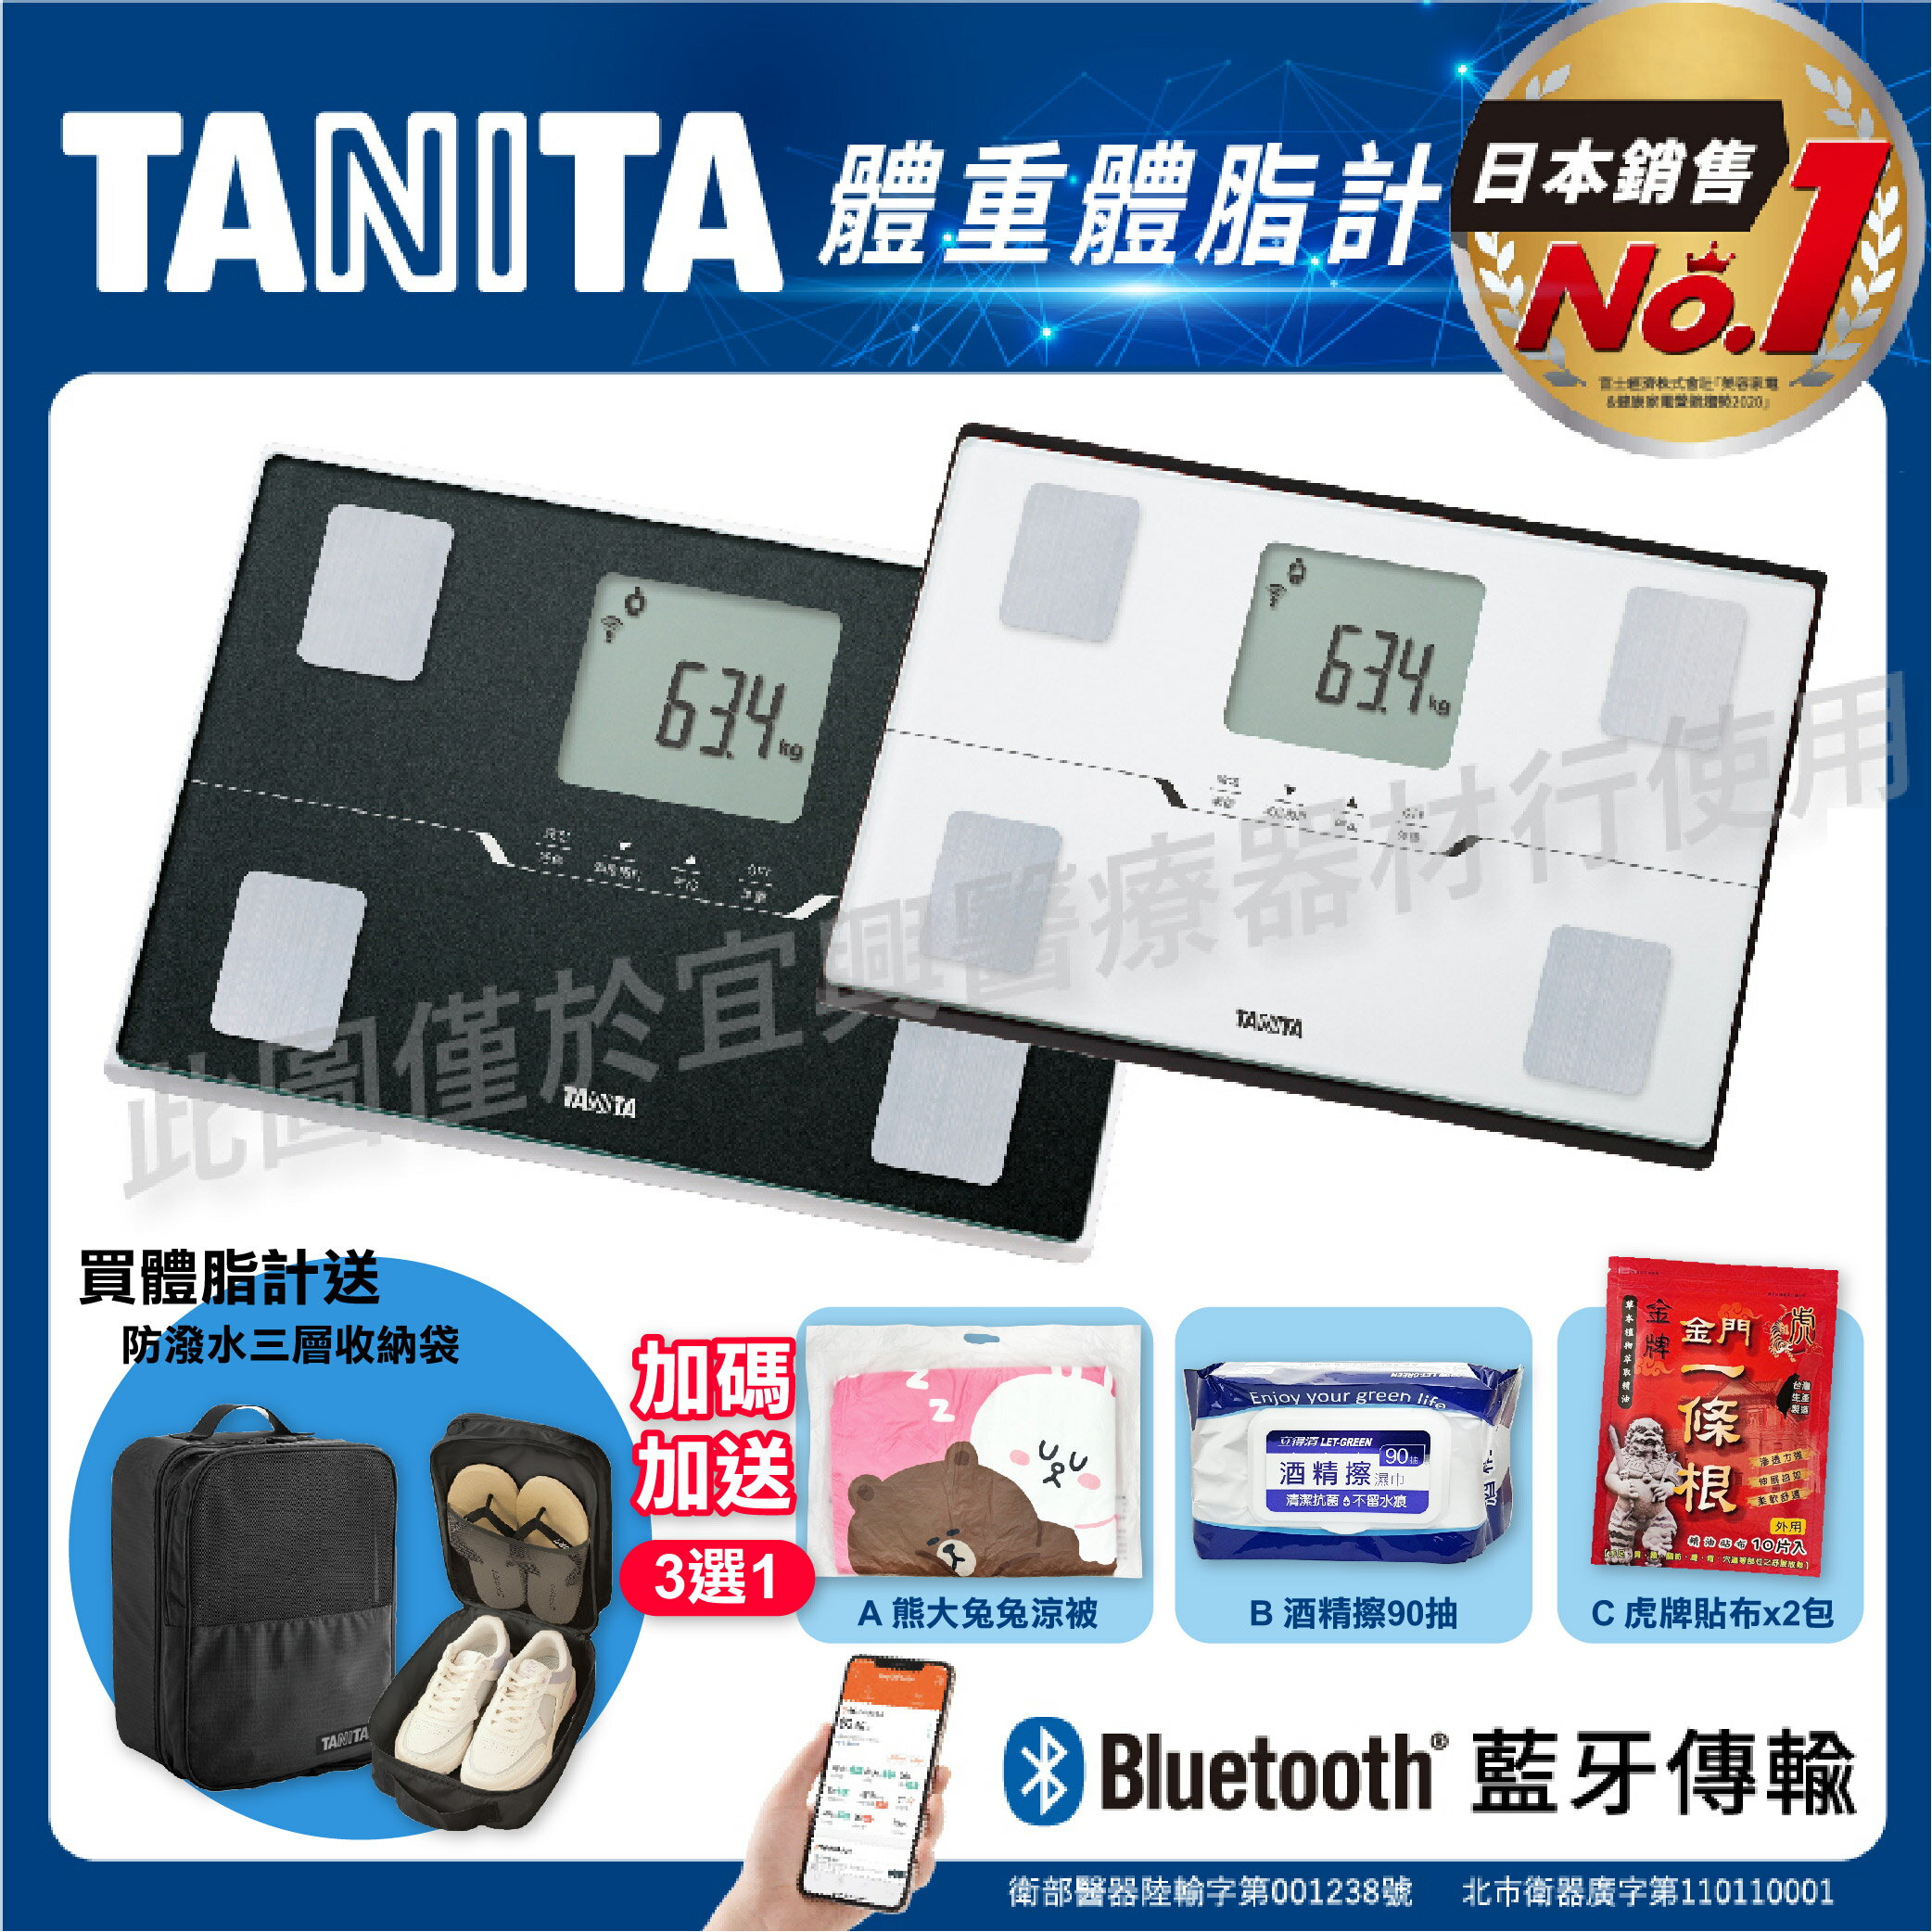 【 好禮多選一】【免運】TANITA 十合一藍牙智能體組成計 BC402 藍芽 體脂計 體重計 402